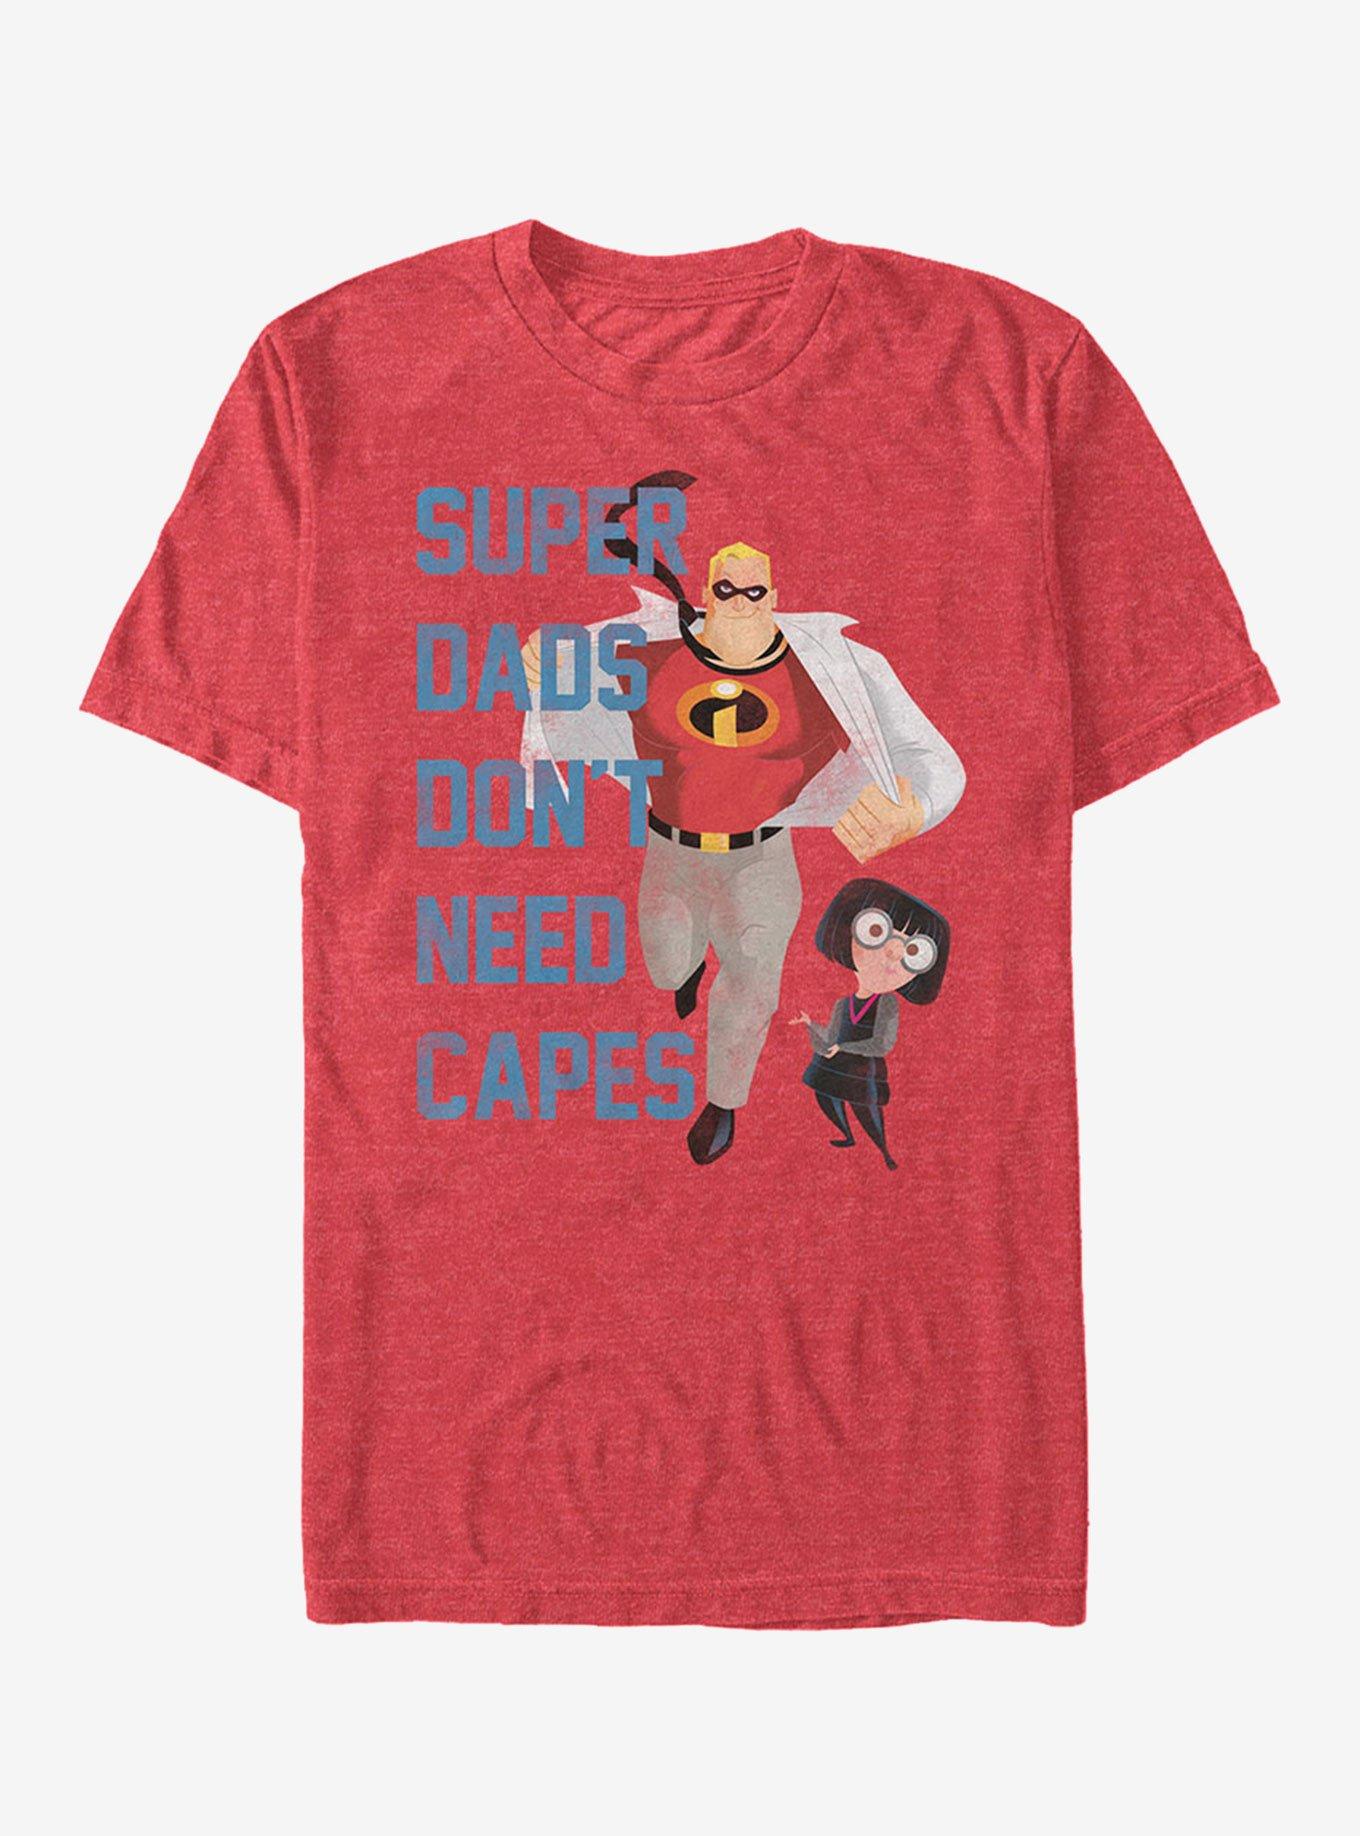 Disney Pixar The Incredibles Super Dads Don't Need Capes T-Shirt, , hi-res